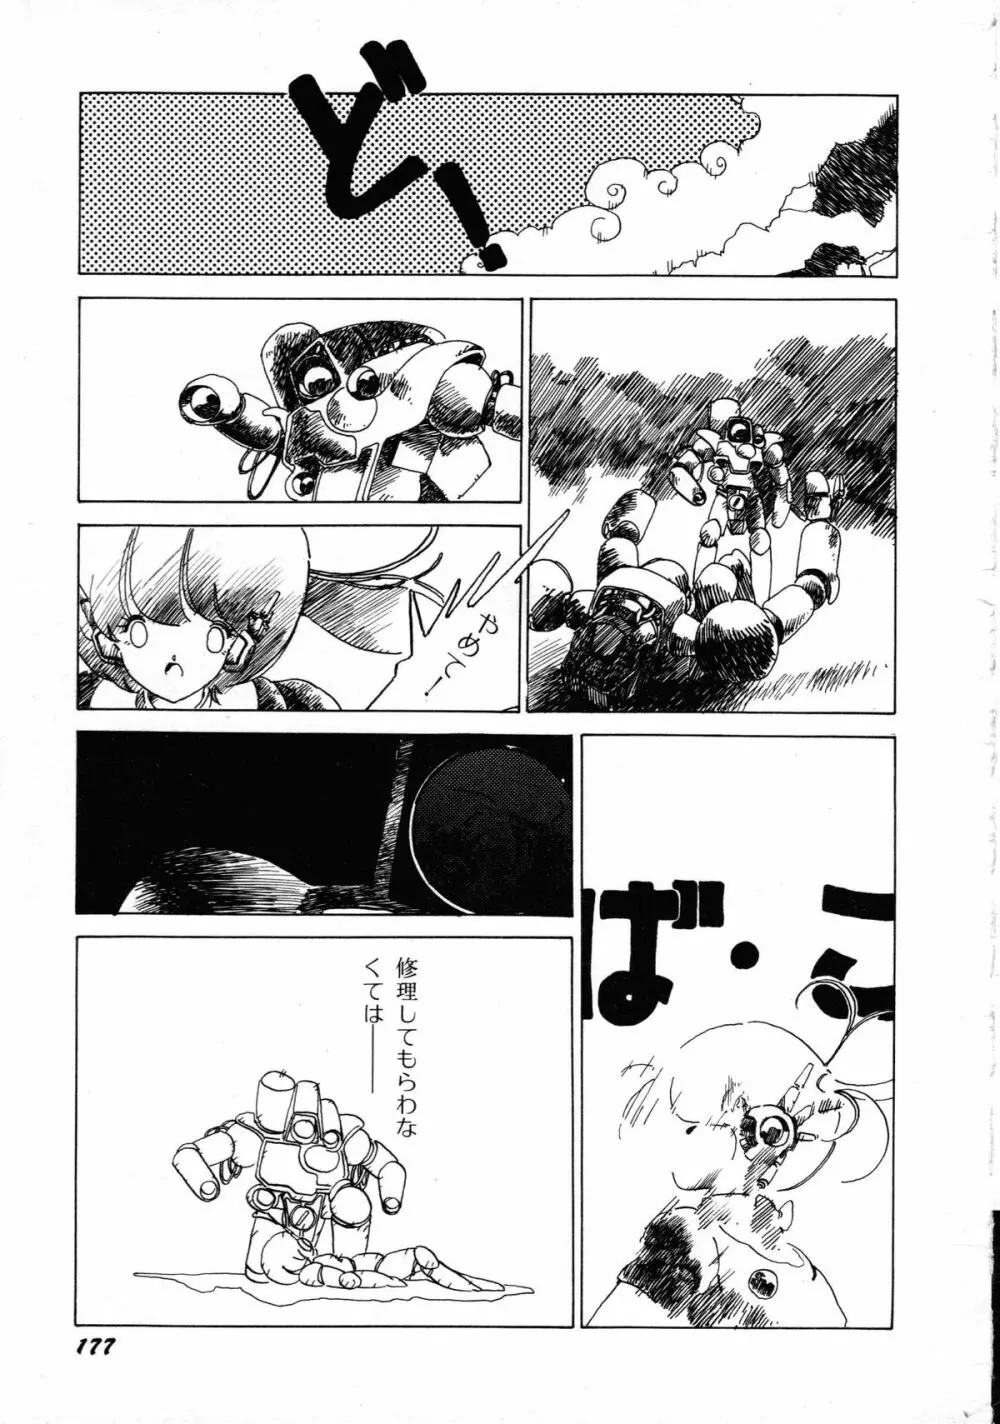 ロボット&美少女傑作選 レモン・ピープル1982-1986 181ページ